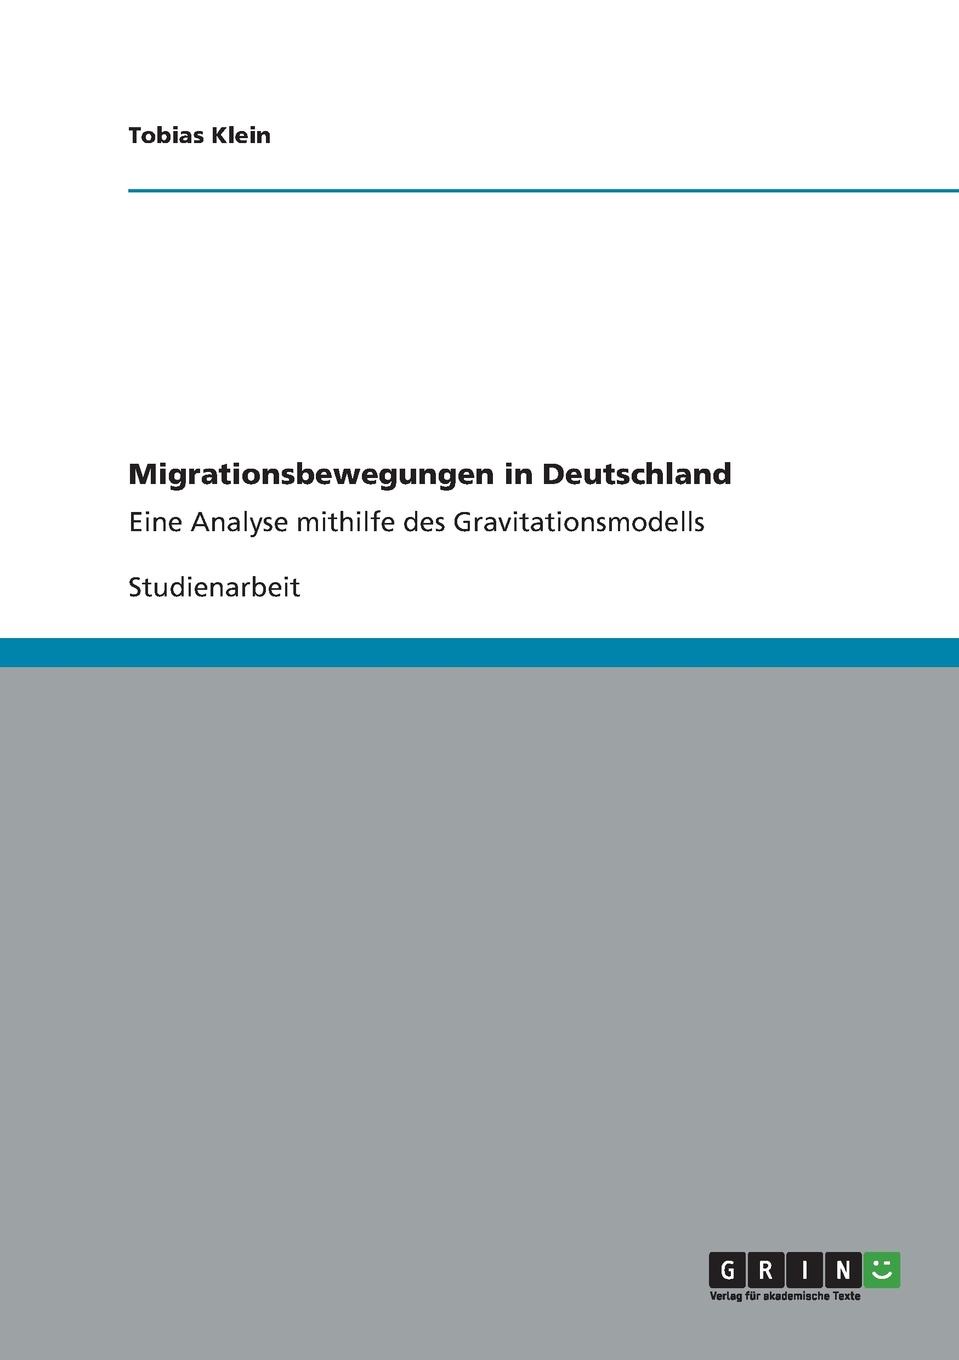 Migrationsbewegungen in Deutschland